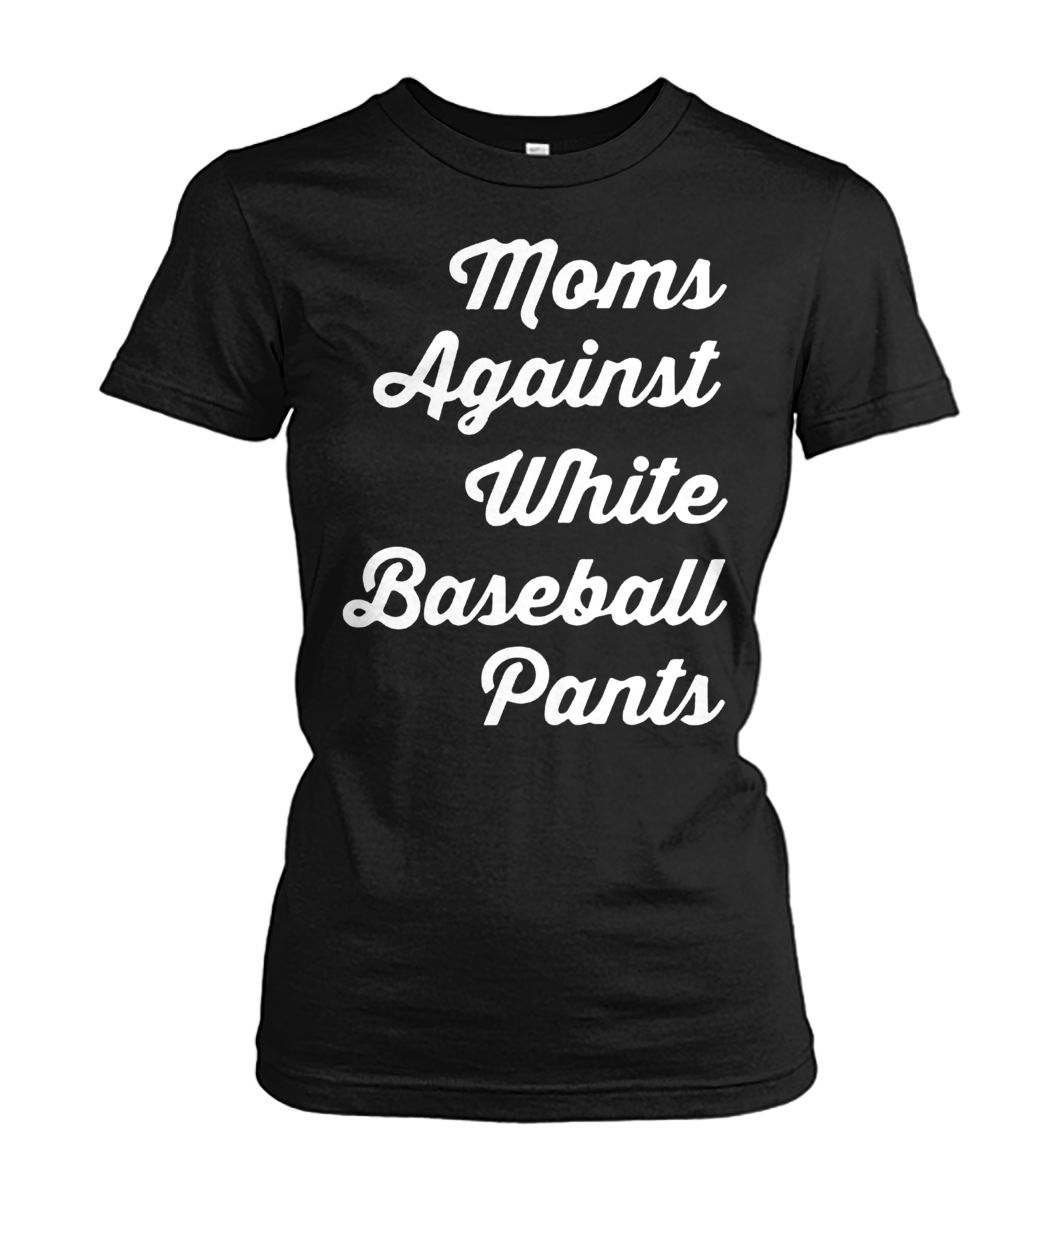 Mom against white baseball pants women's crew tee